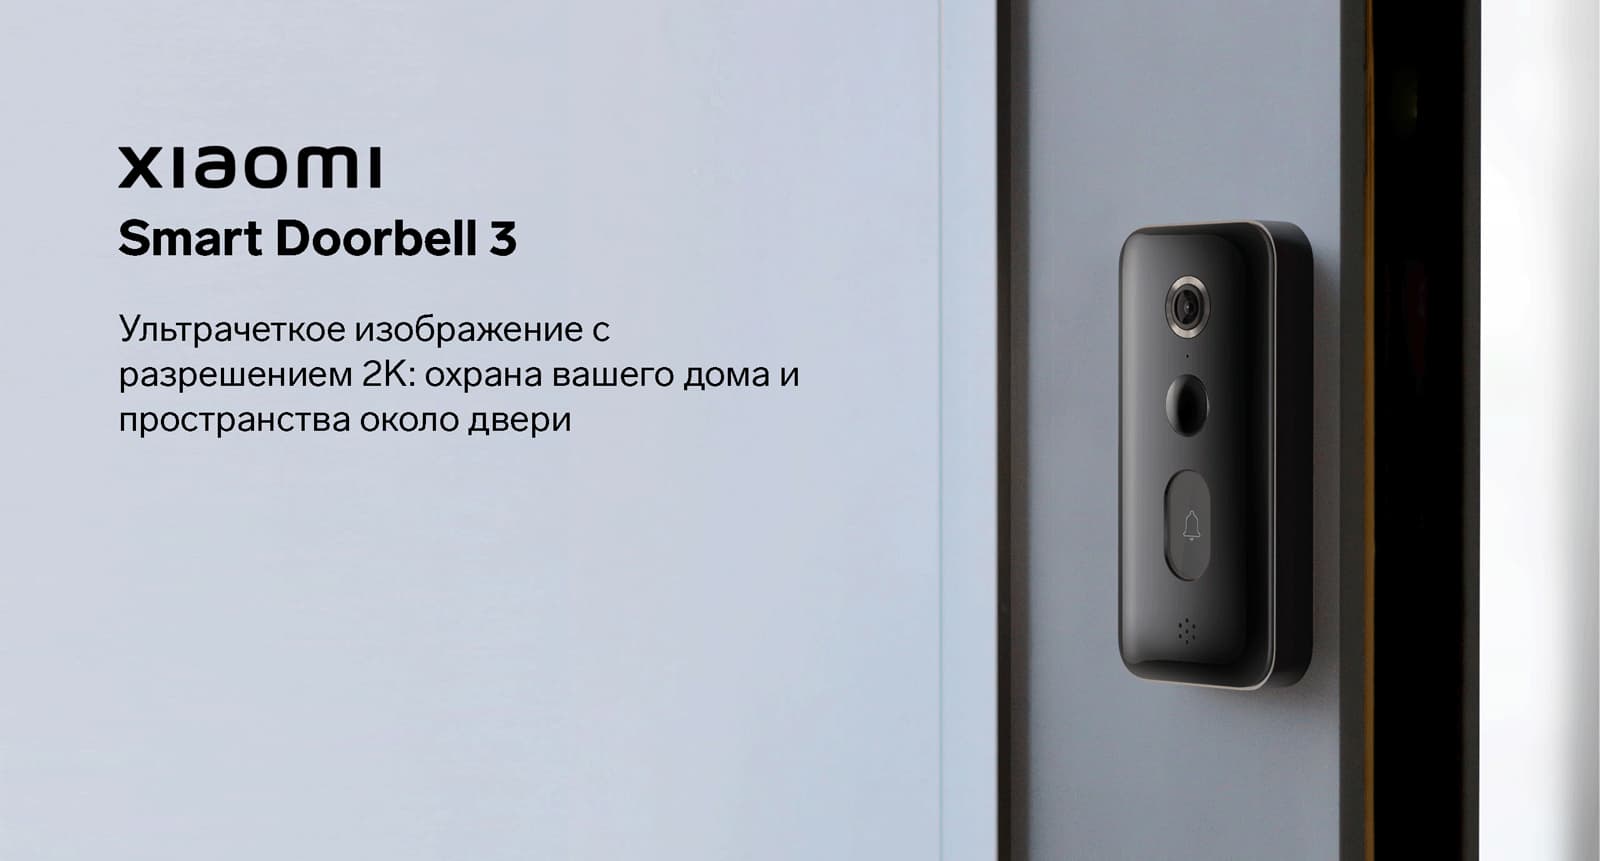 Умный дверной звонок Xiaomi Smart Doorbell 3. Умный дверной звонок Xiaomi Smart Doorbell 3 черный bhr5416gl. Видеозвонок Xiaomi Mijia Smart Doorbell 3. Звонок дверной умный Xiaomi Smart Doorbell 3 как крепить. Звонок xiaomi doorbell 3